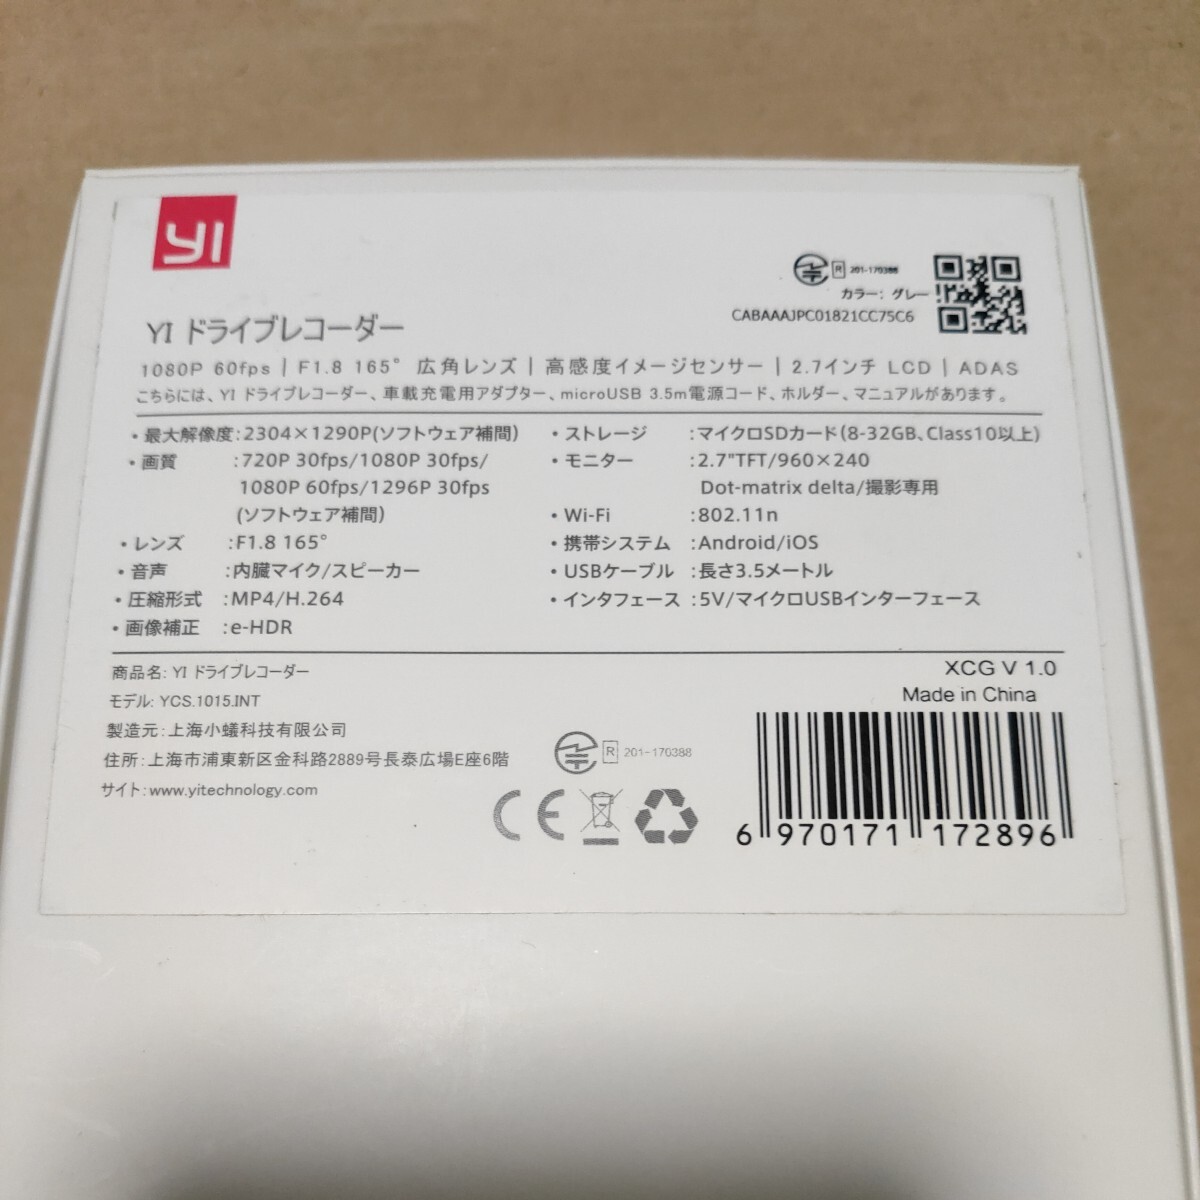 Yi регистратор пути (drive recorder) Xiaomi панель приборов cam SD карта высокая прочность Sandisk HighEndurance 64GB имеется do RaRe ko